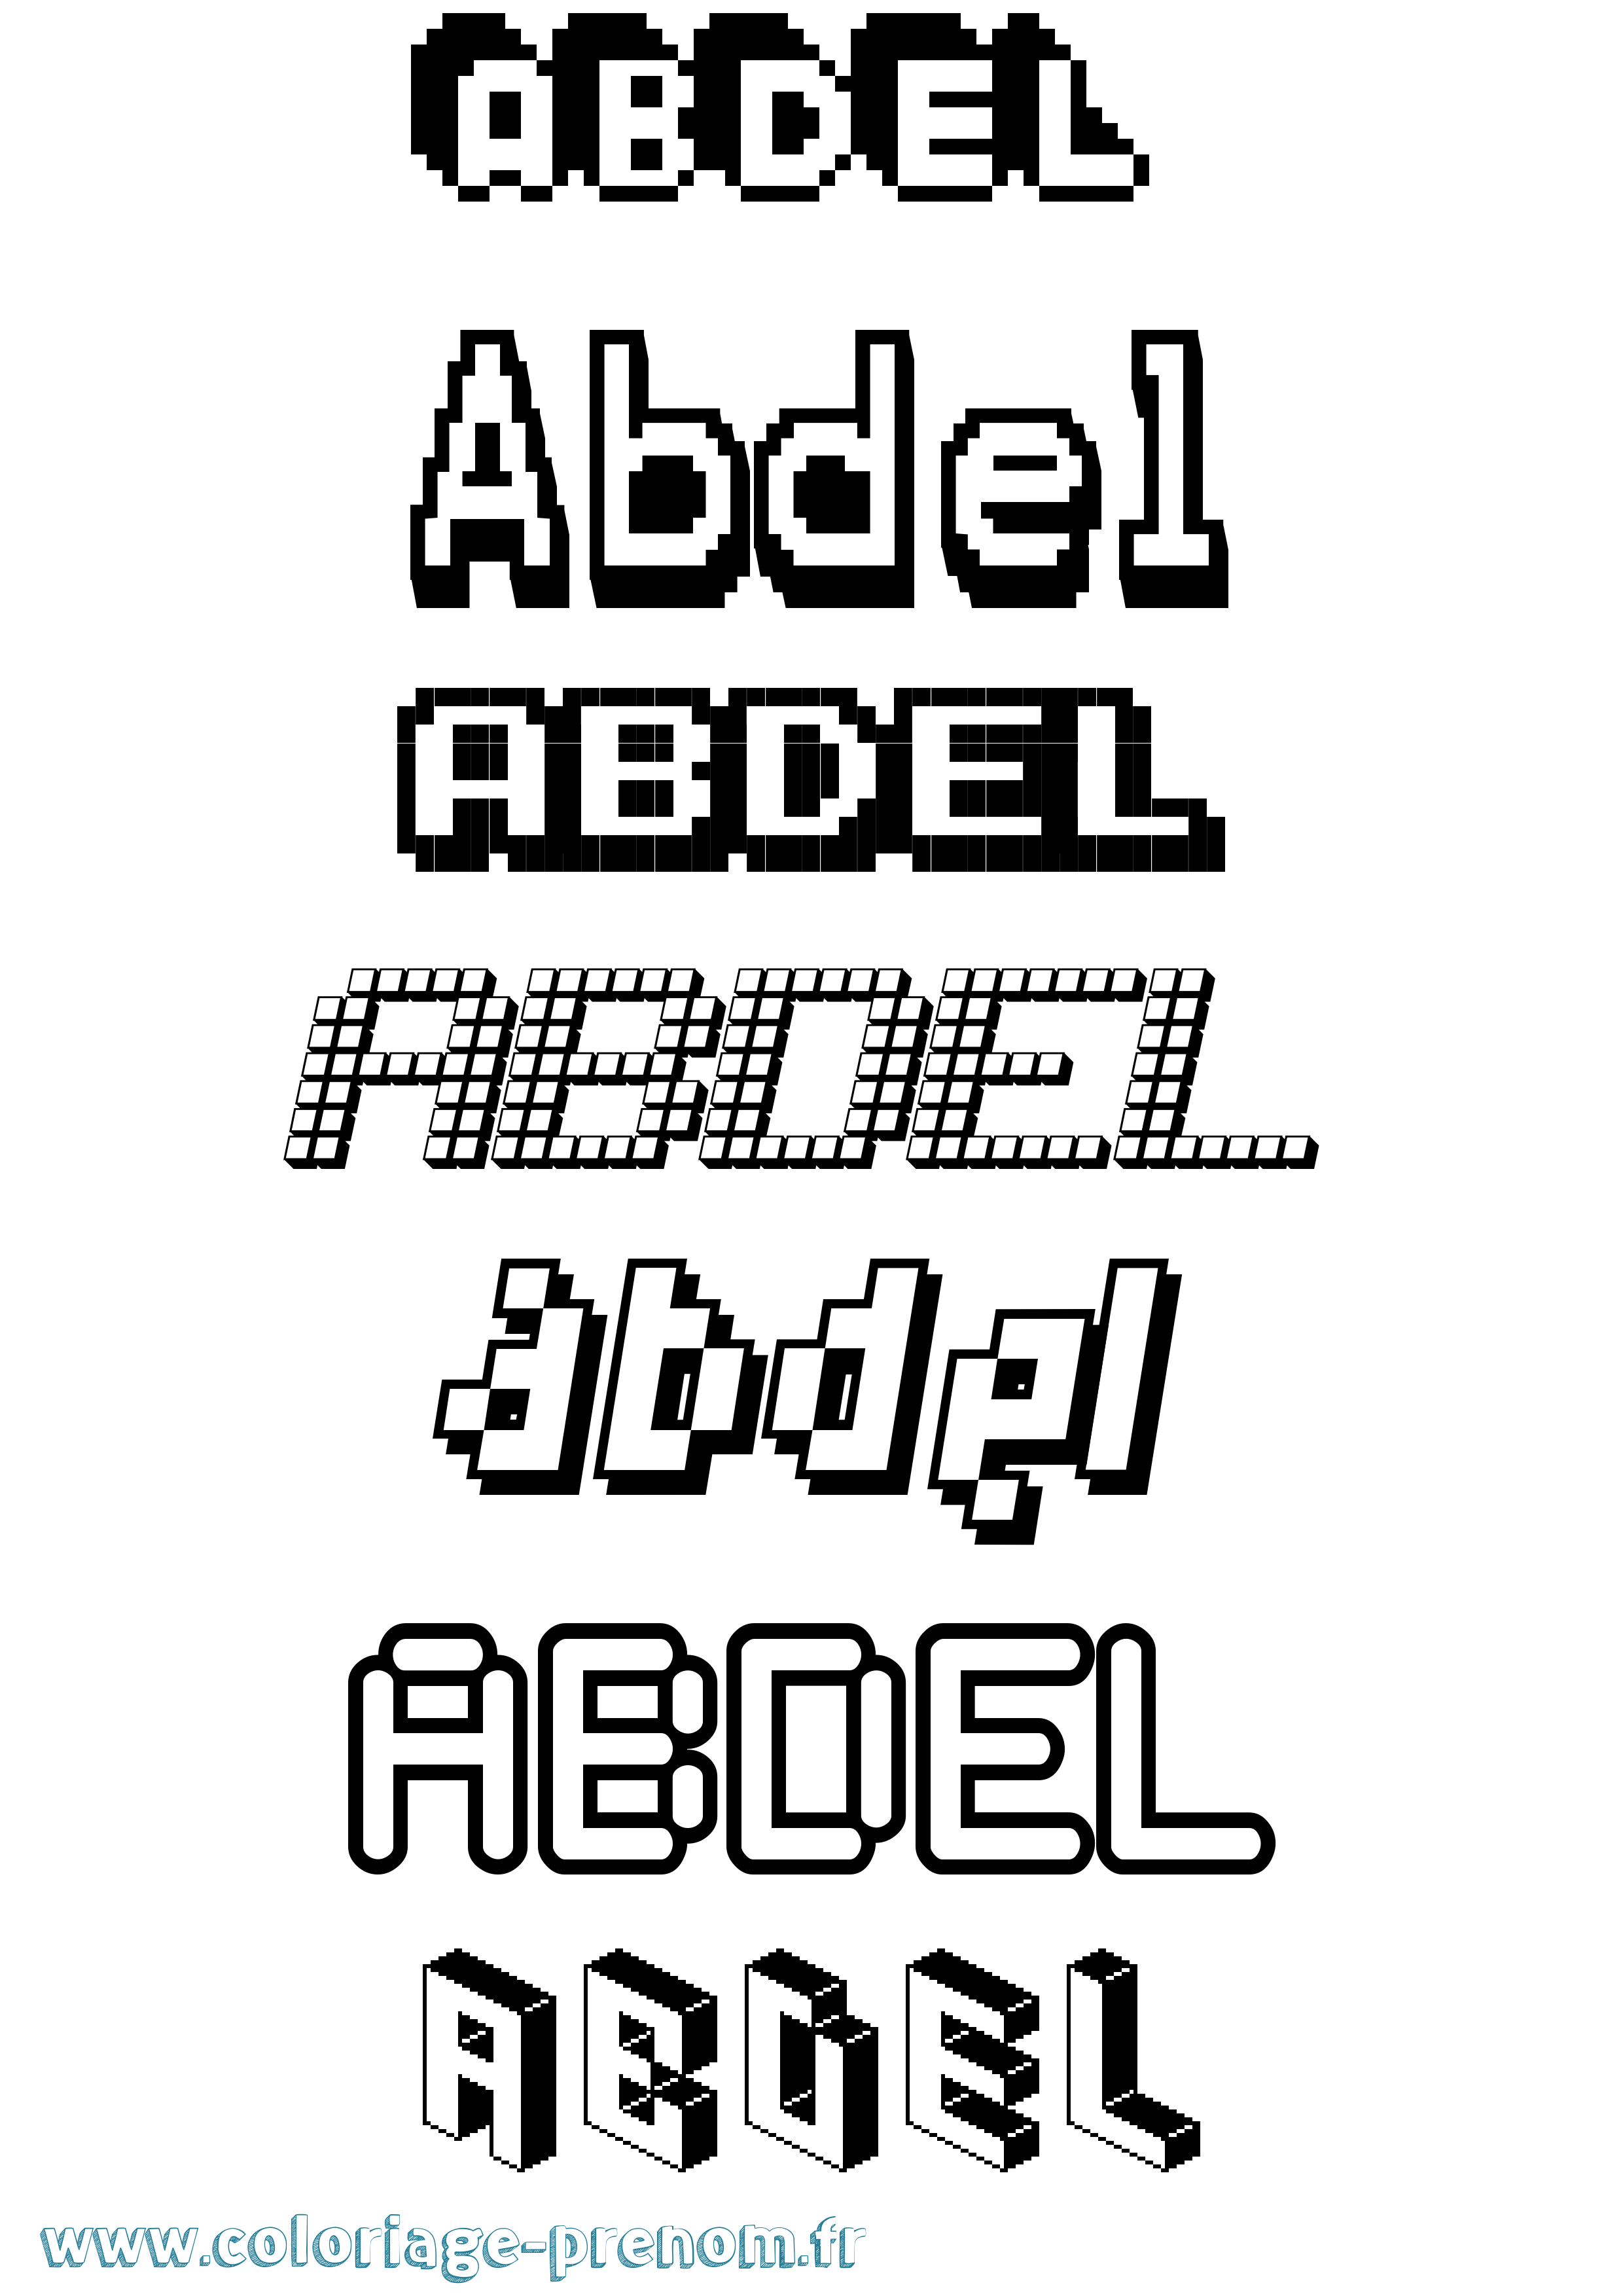 Coloriage prénom Abdel Pixel